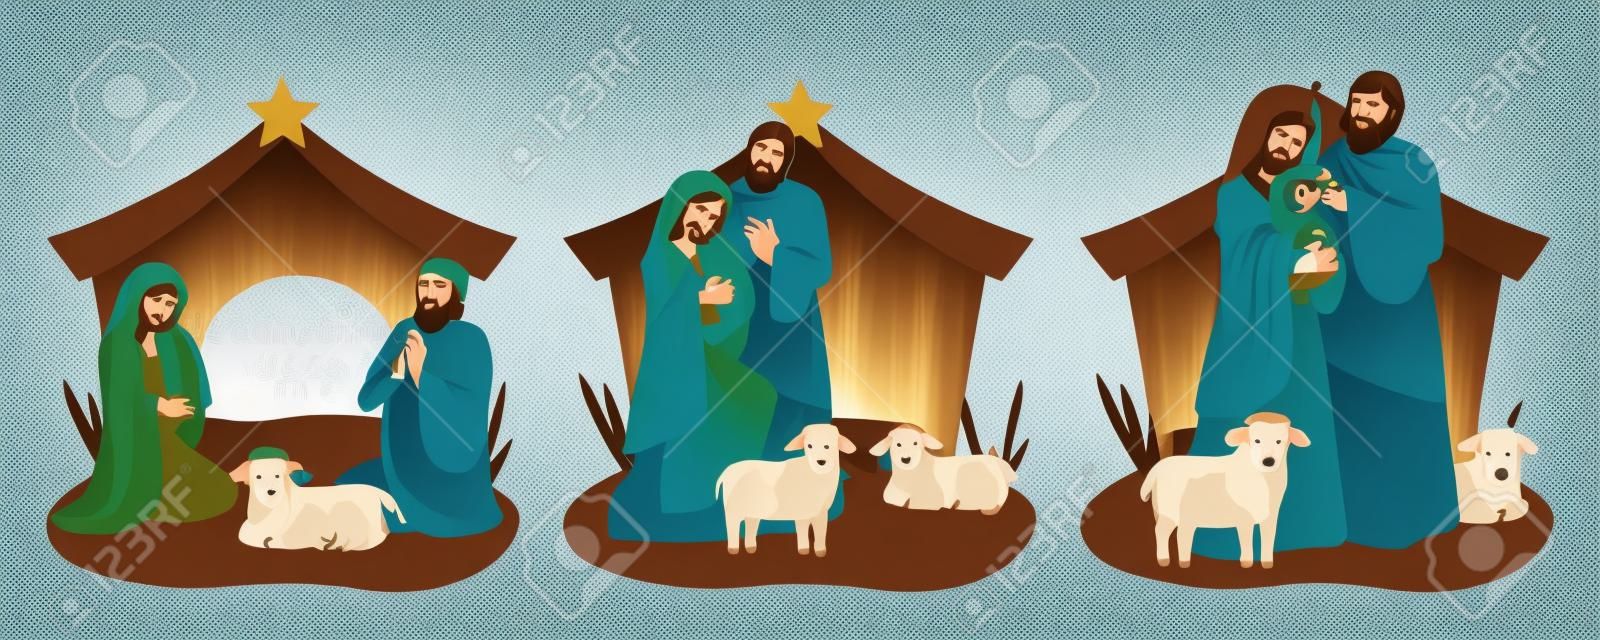 Jezus in een kribbe met Maria en Jozef met een dier. Jezus wordt geboren in een stal. Kerstmis 2021 Vector illustratie.